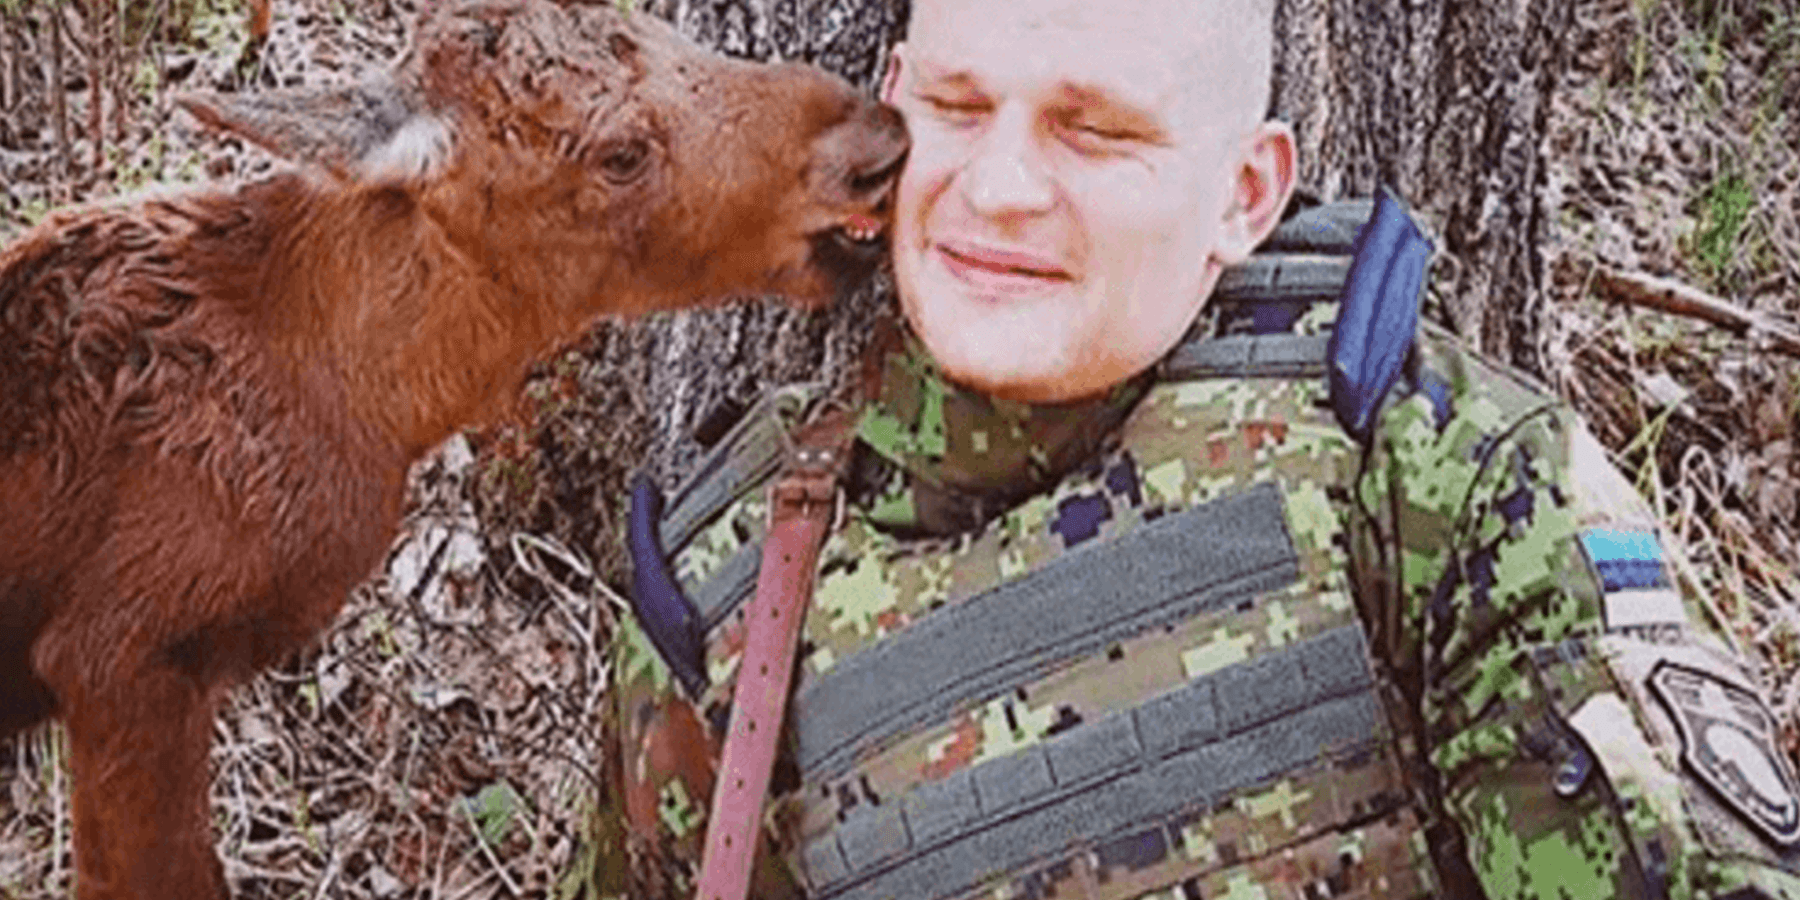 Filhote de alce perdido encontra soldado na floresta e pede ajuda